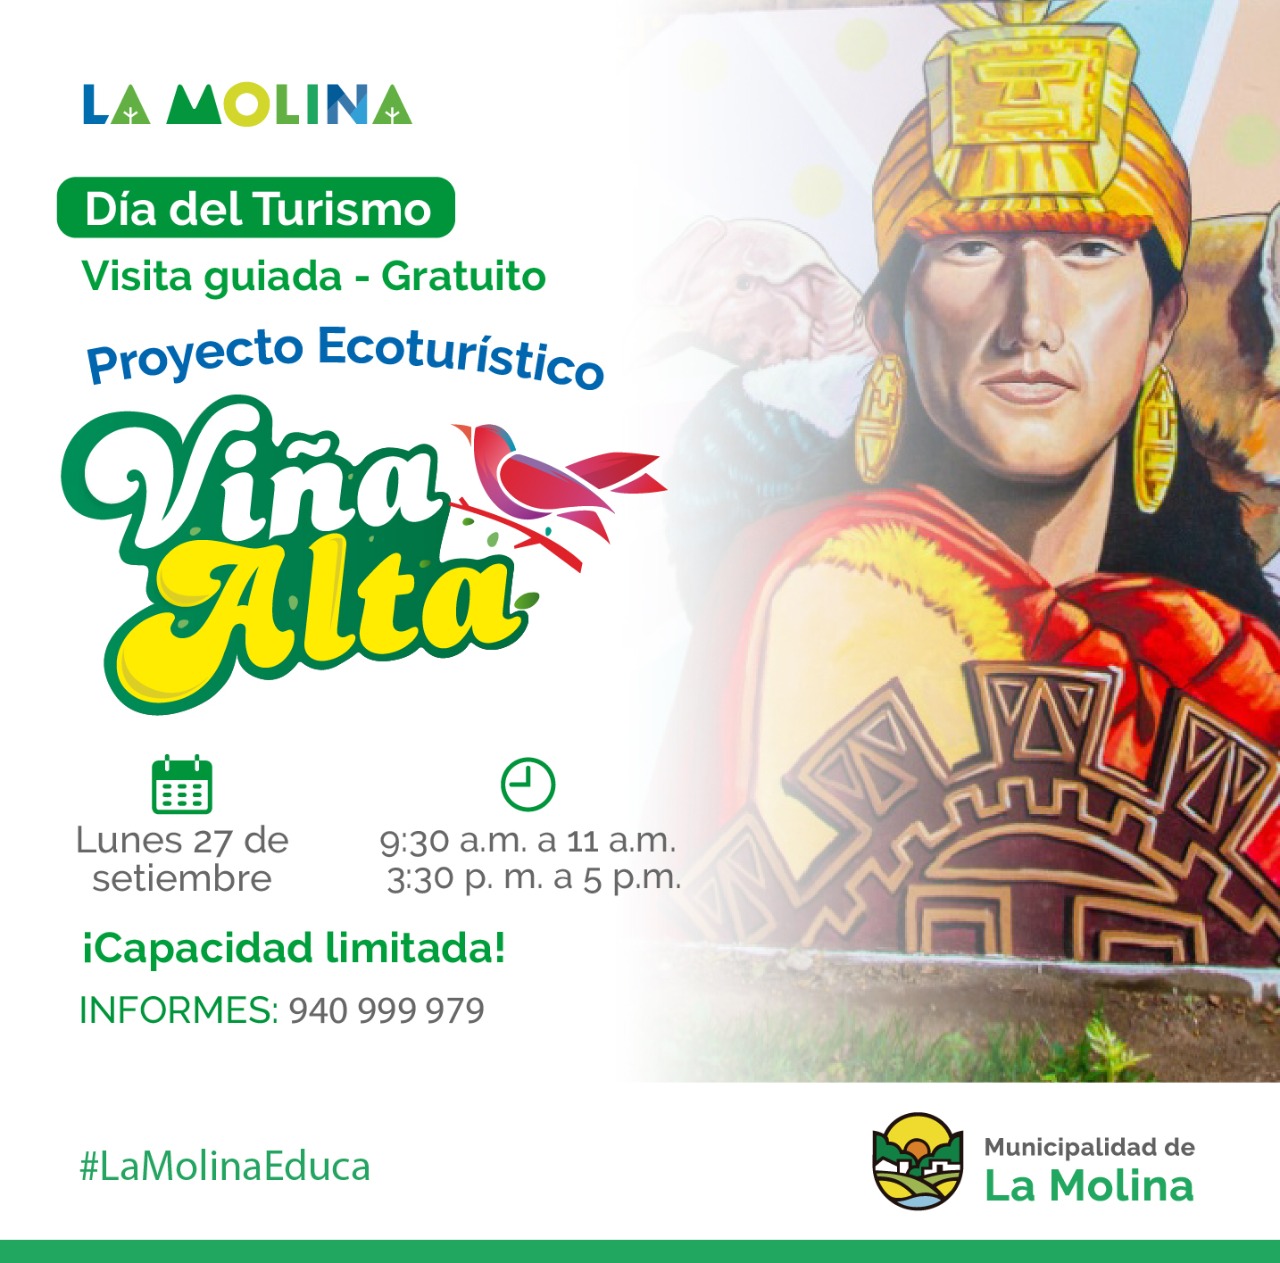 PROYECTO ECOTURÍSTICO  Por el Día del Turismo, este 27 de septiembre se realizará una visita guiada al Proyecto Ecoturístico Viña Alta, que está conformado por murales artísticos que retratan la tradición y logros de esta emblemática comunidad de La Molina.